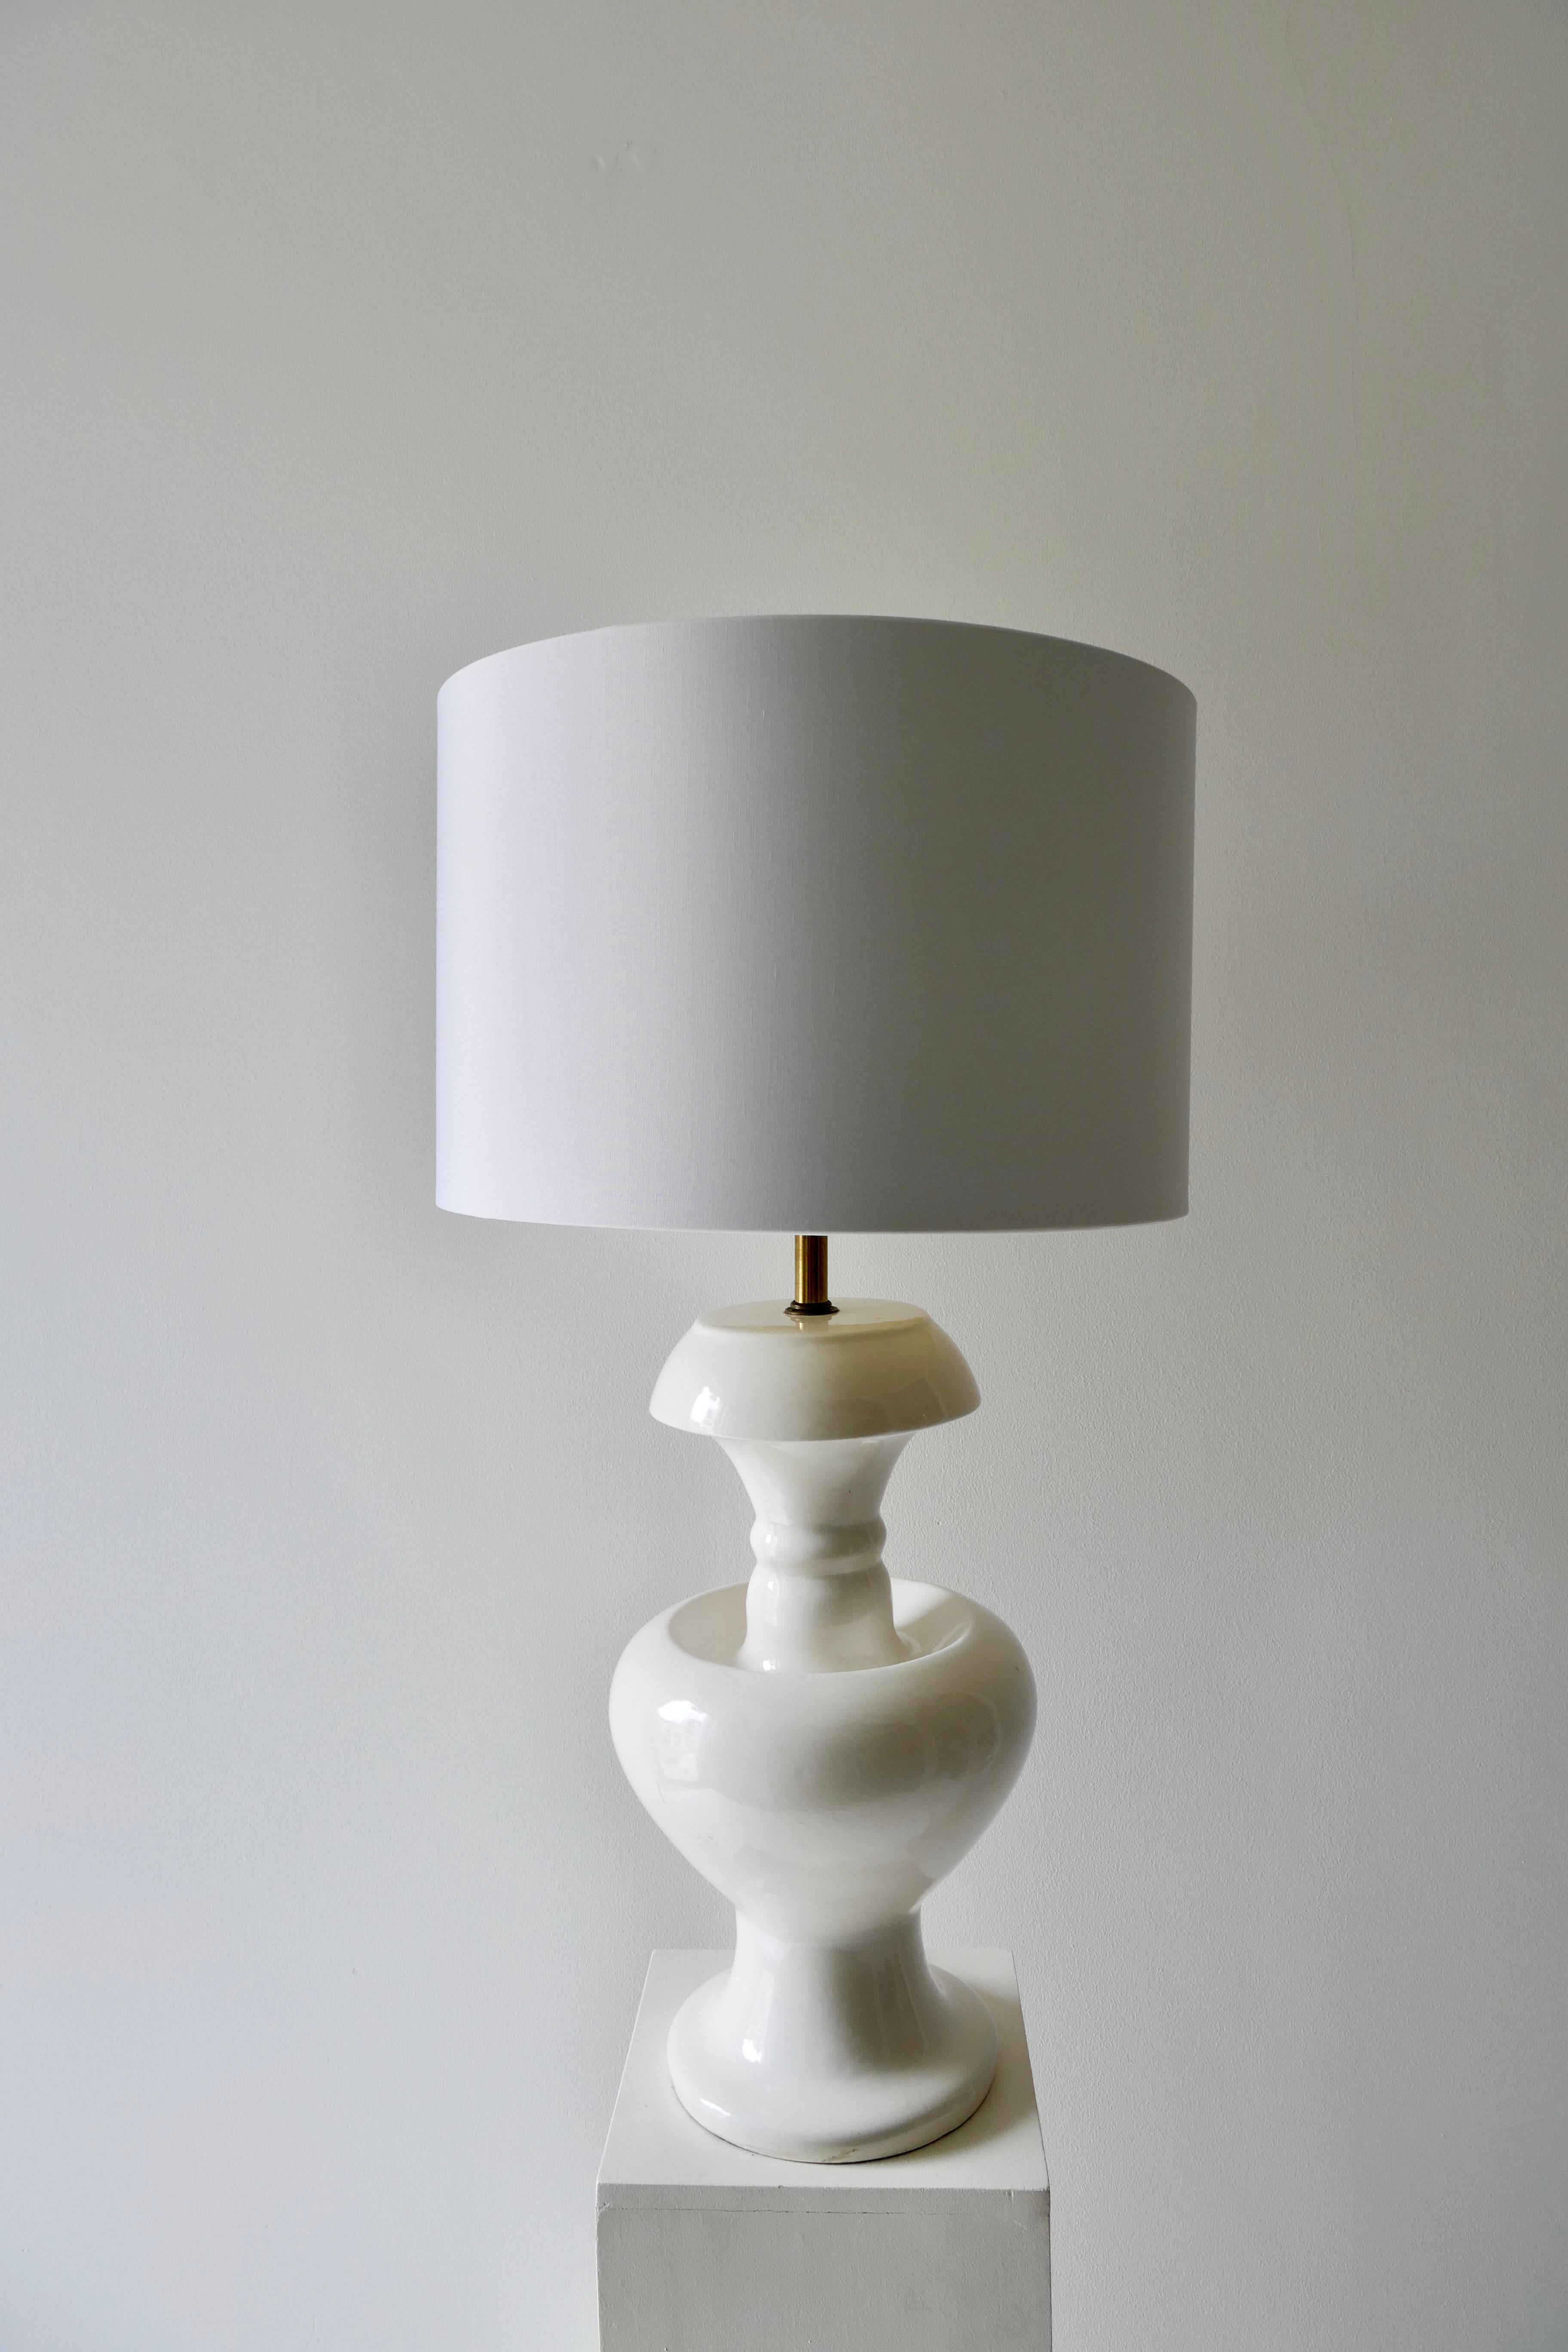 De forme sinueuse et d'une élégante simplicité, cette lampe de table est parfaite dans un salon ou une chambre à coucher
Céramique blanche et nouvel abat-jour
Américain moderne du milieu du siècle.